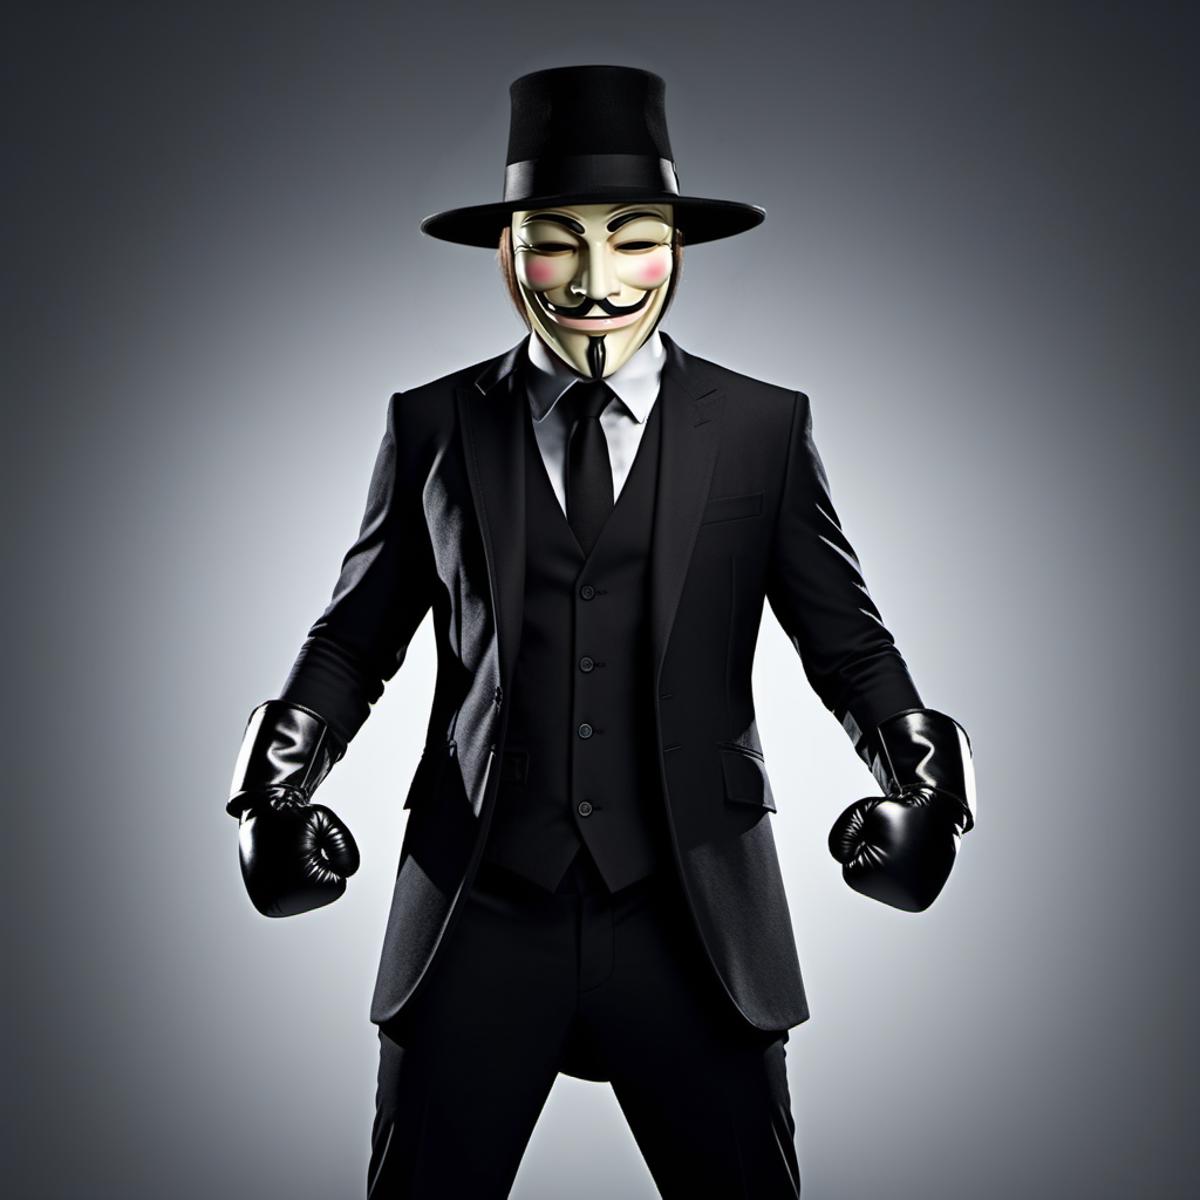 V for Vendetta - SDXL image by PhotobAIt